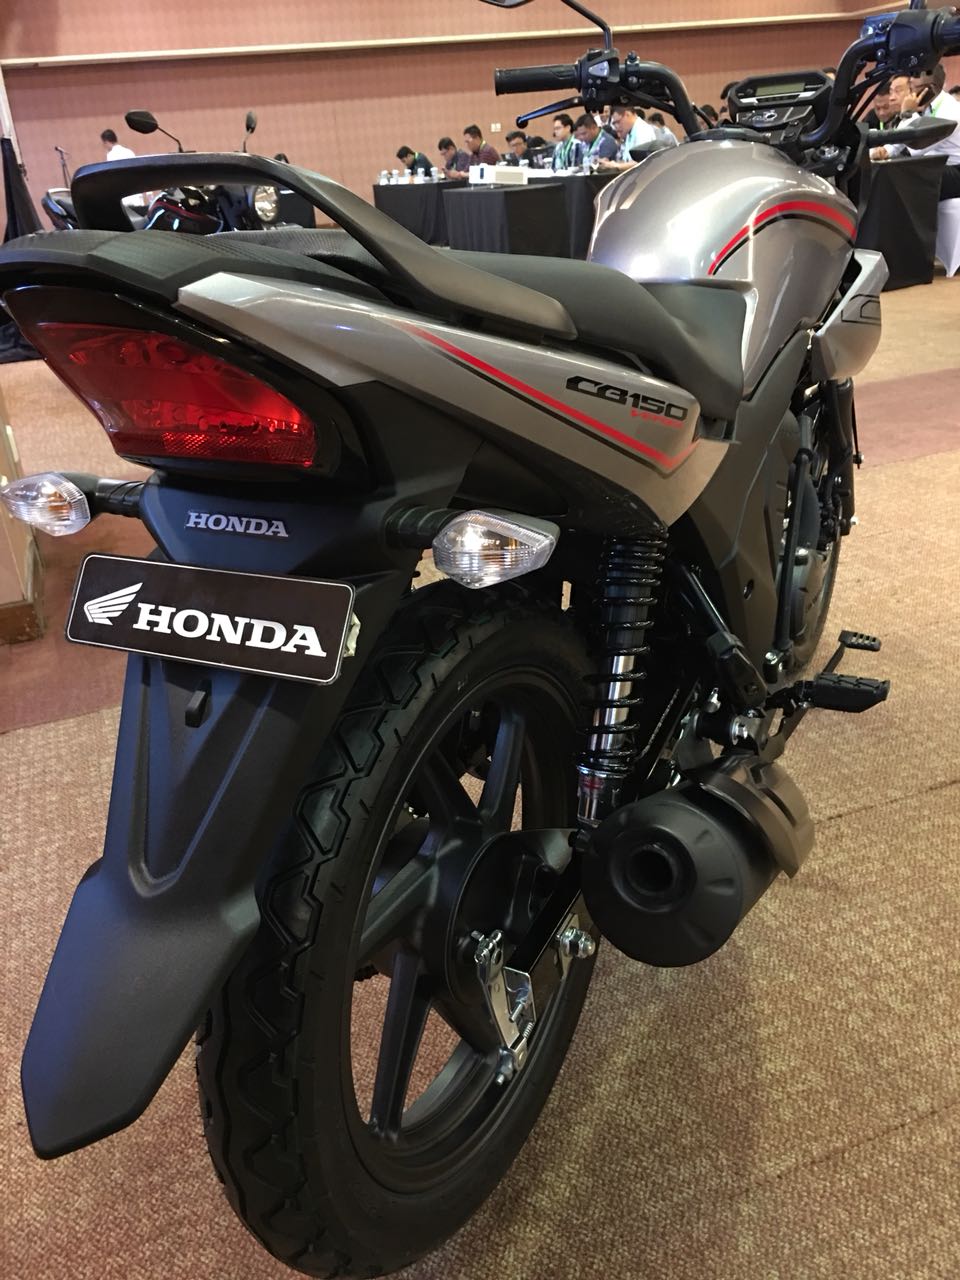 All New Honda CB150 Verza - Spesies apakah ini ? | Promo Kredit Motor ...